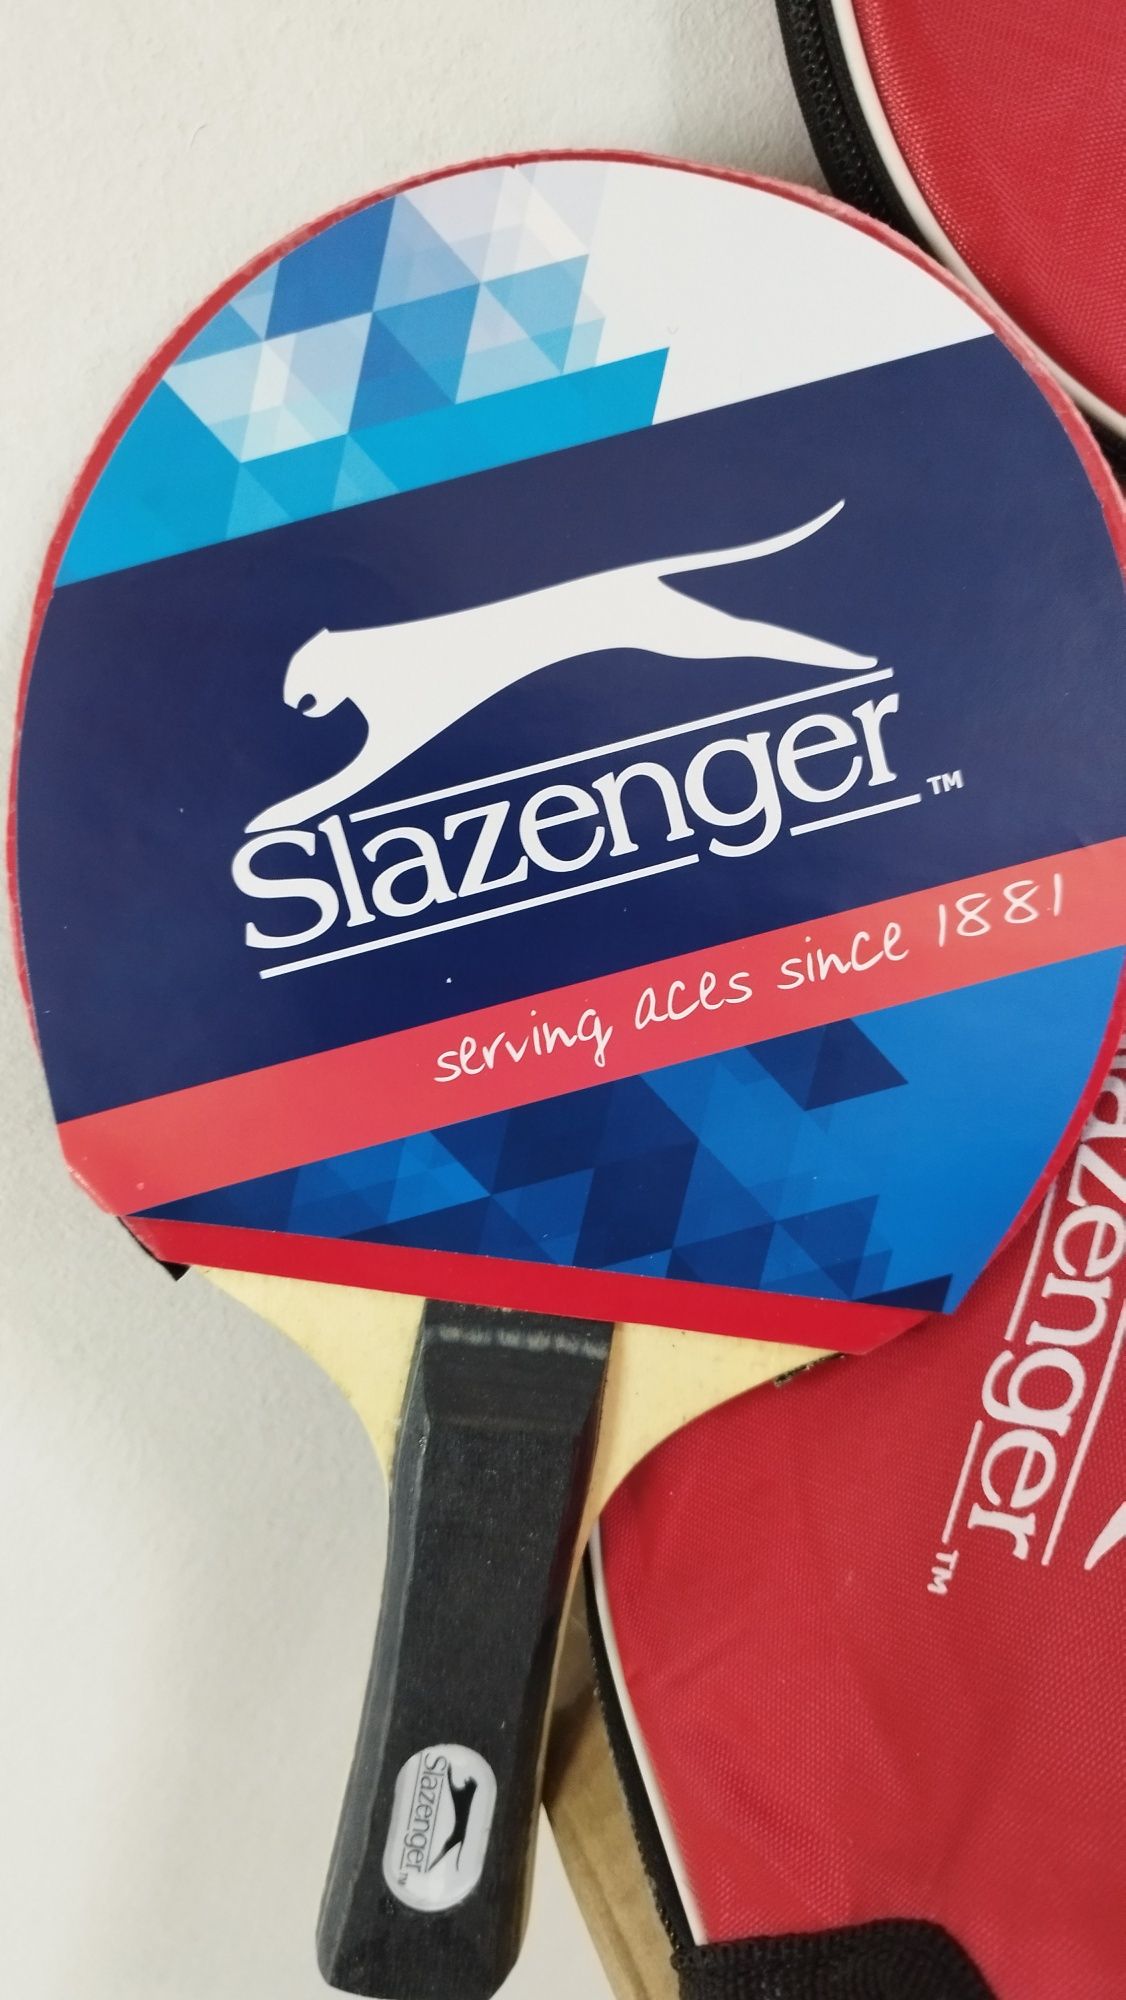 Palete ping pong Slazenger